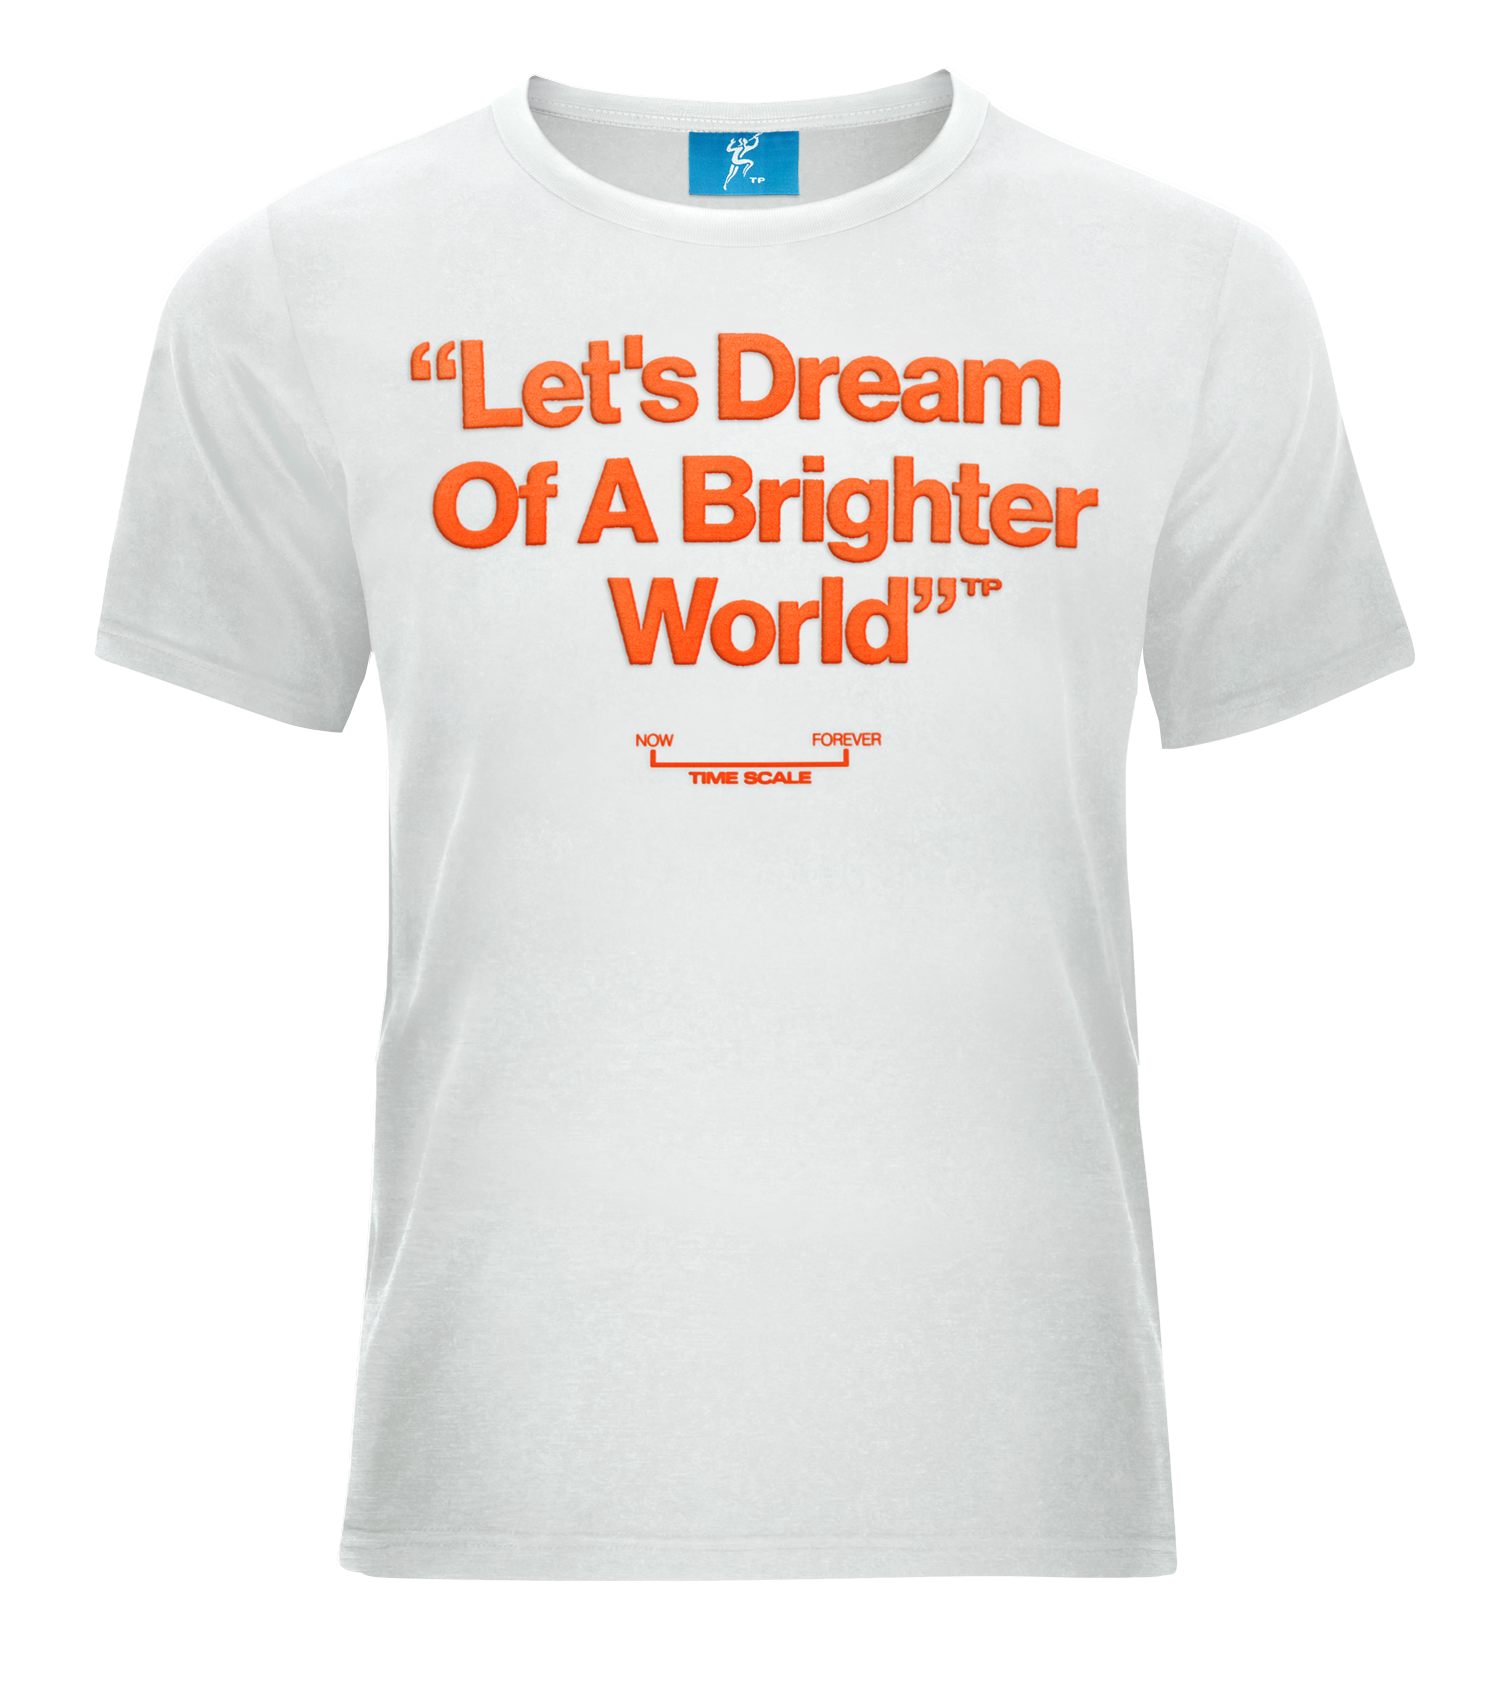 La'eeb's Dream [Let's Dream Of A Brighter World]